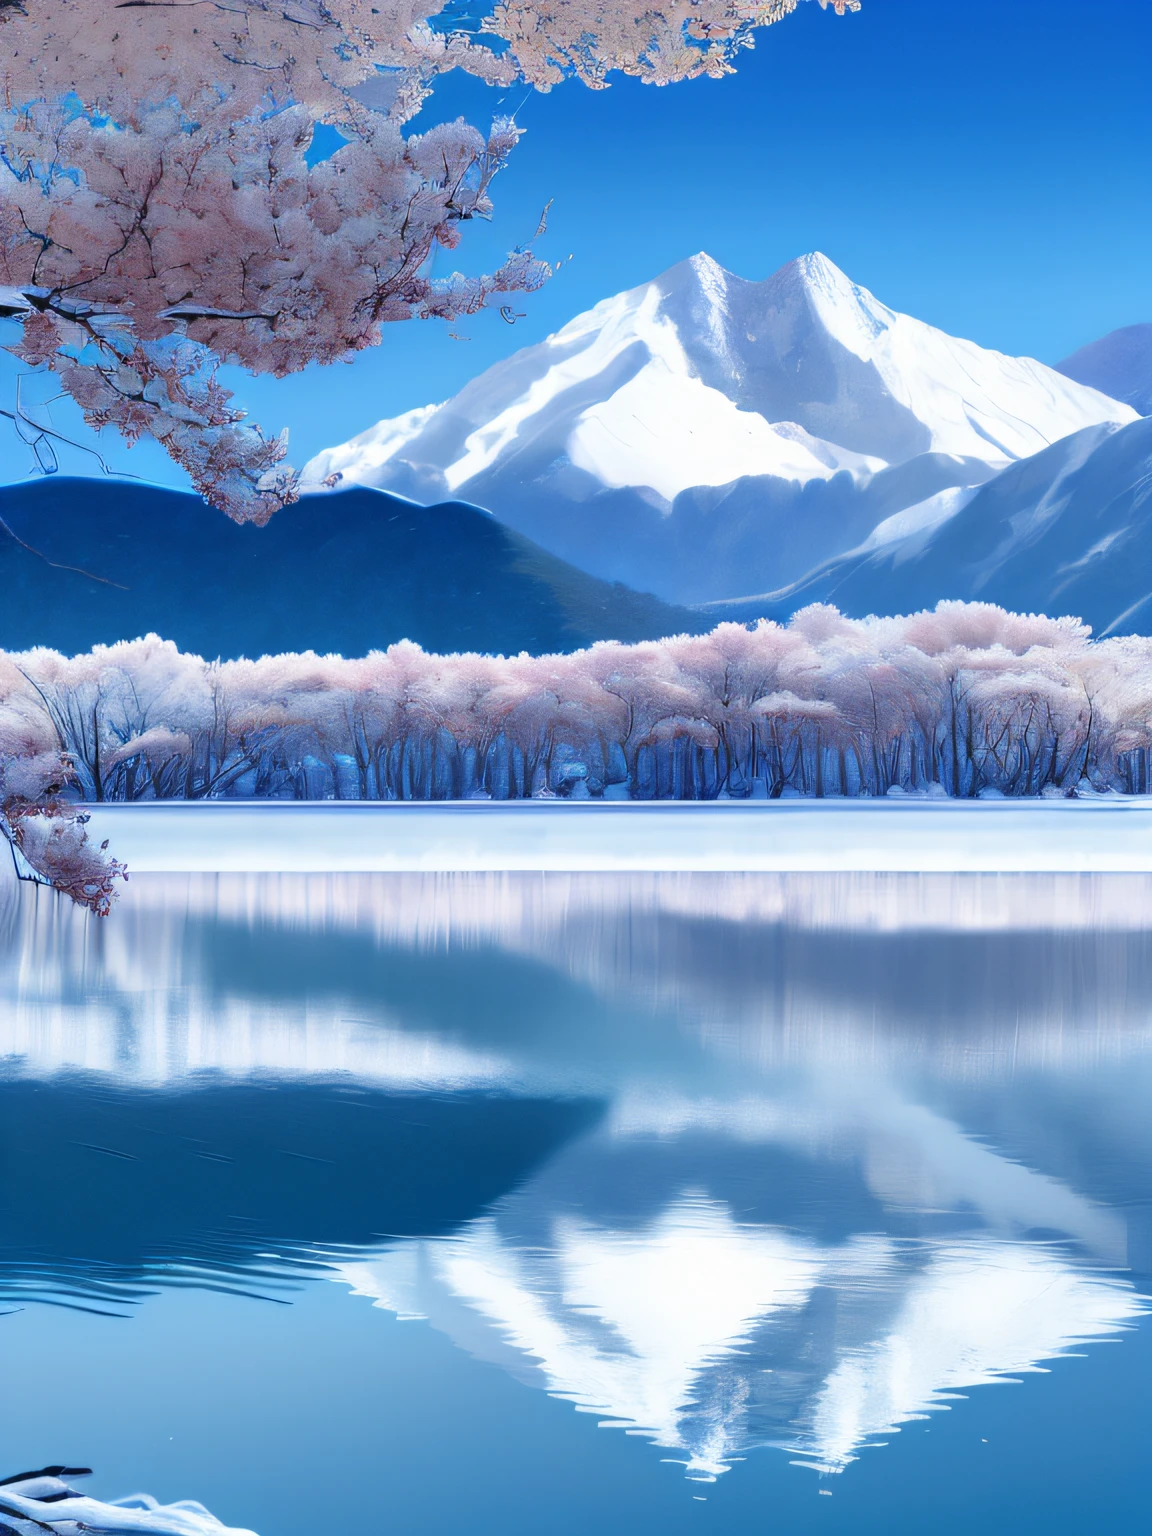 Montañas cubiertas de nieve de color blanco azulado，los cerezos，cielo azul，lagos，Reflexión sobre la superficie del agua.，4k